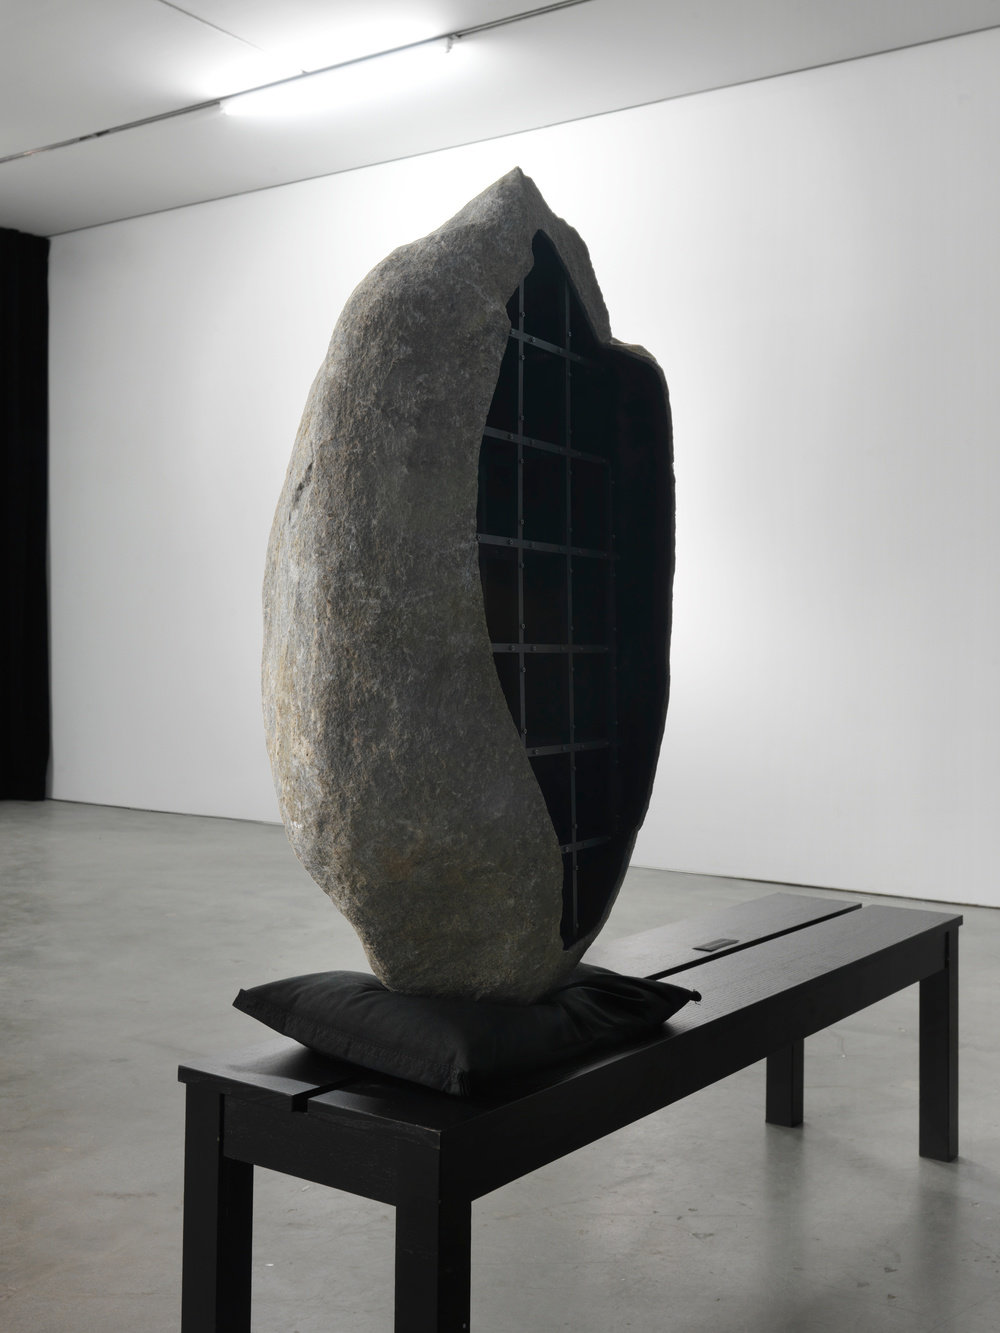 Von bismarck, boulder 1 (view 2), 2015, hollowed boulder, metal framework, sandbag, concrete, 43 x 20 x 17 in. 109.22 x 50.8 x 43.18 cm cnon 56.728